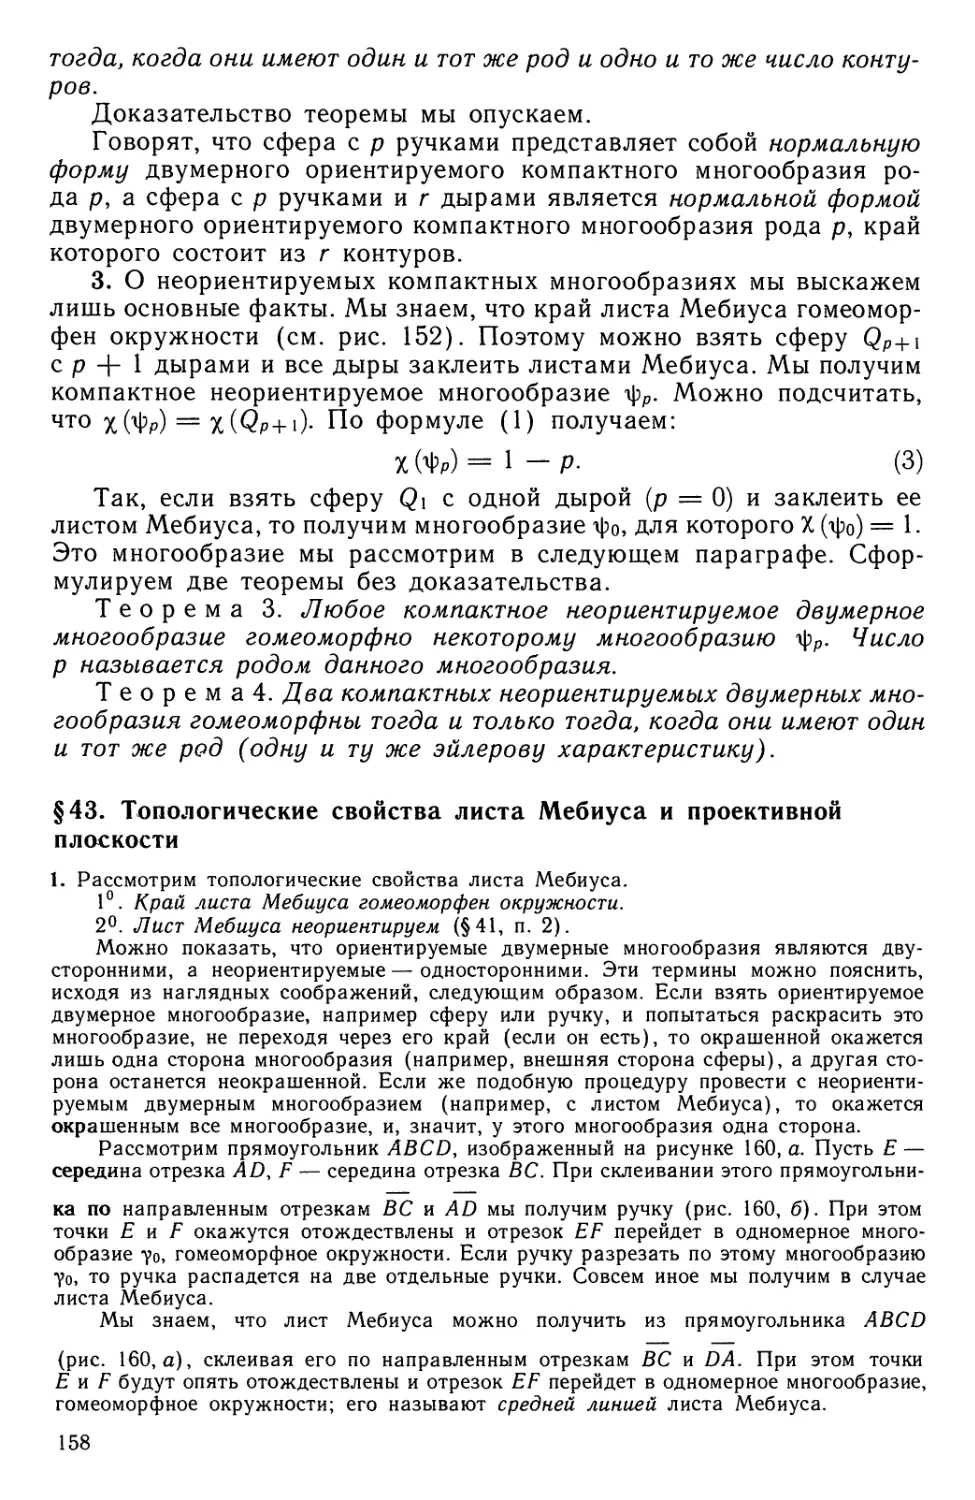 § 43.  Топологические свойства листа Мебиуса и проективной плоскости